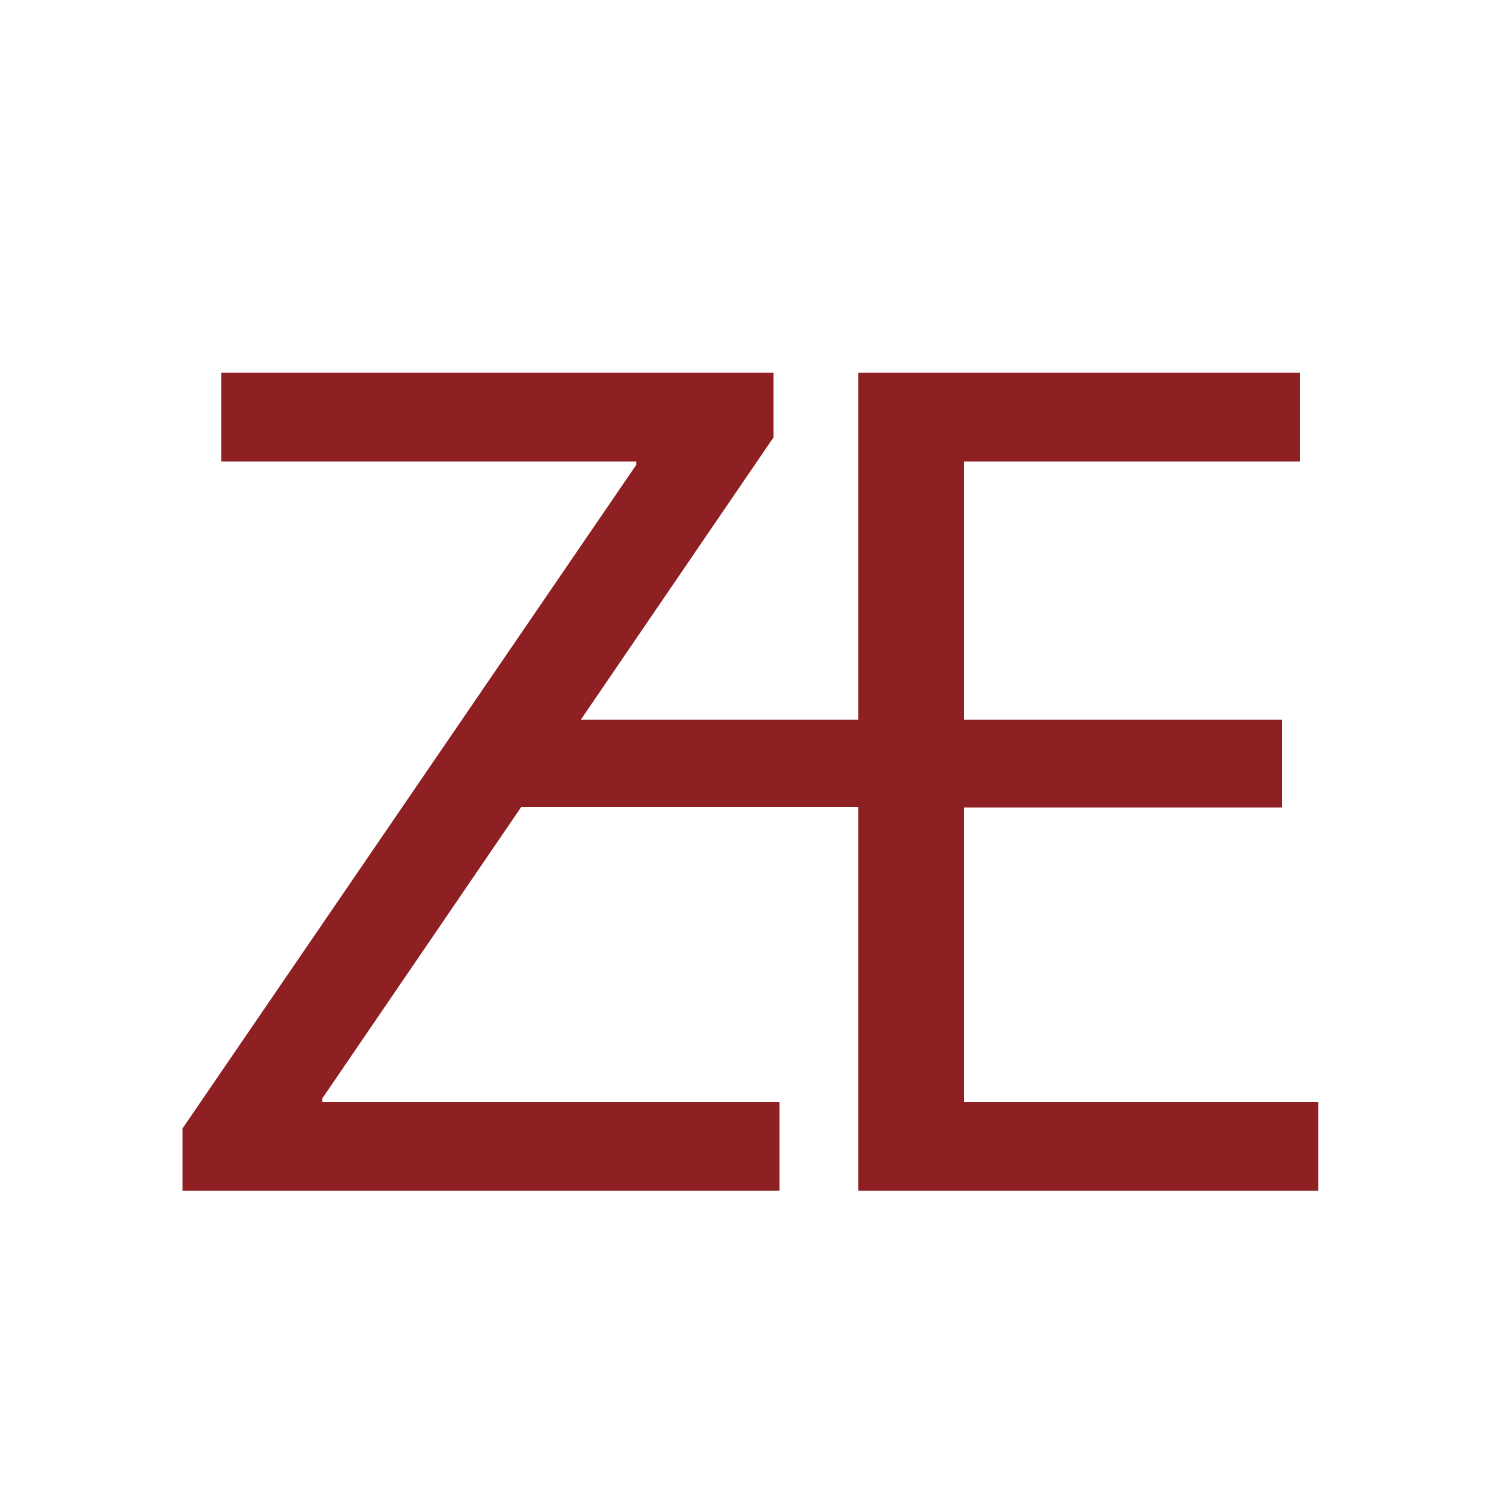 Z-E